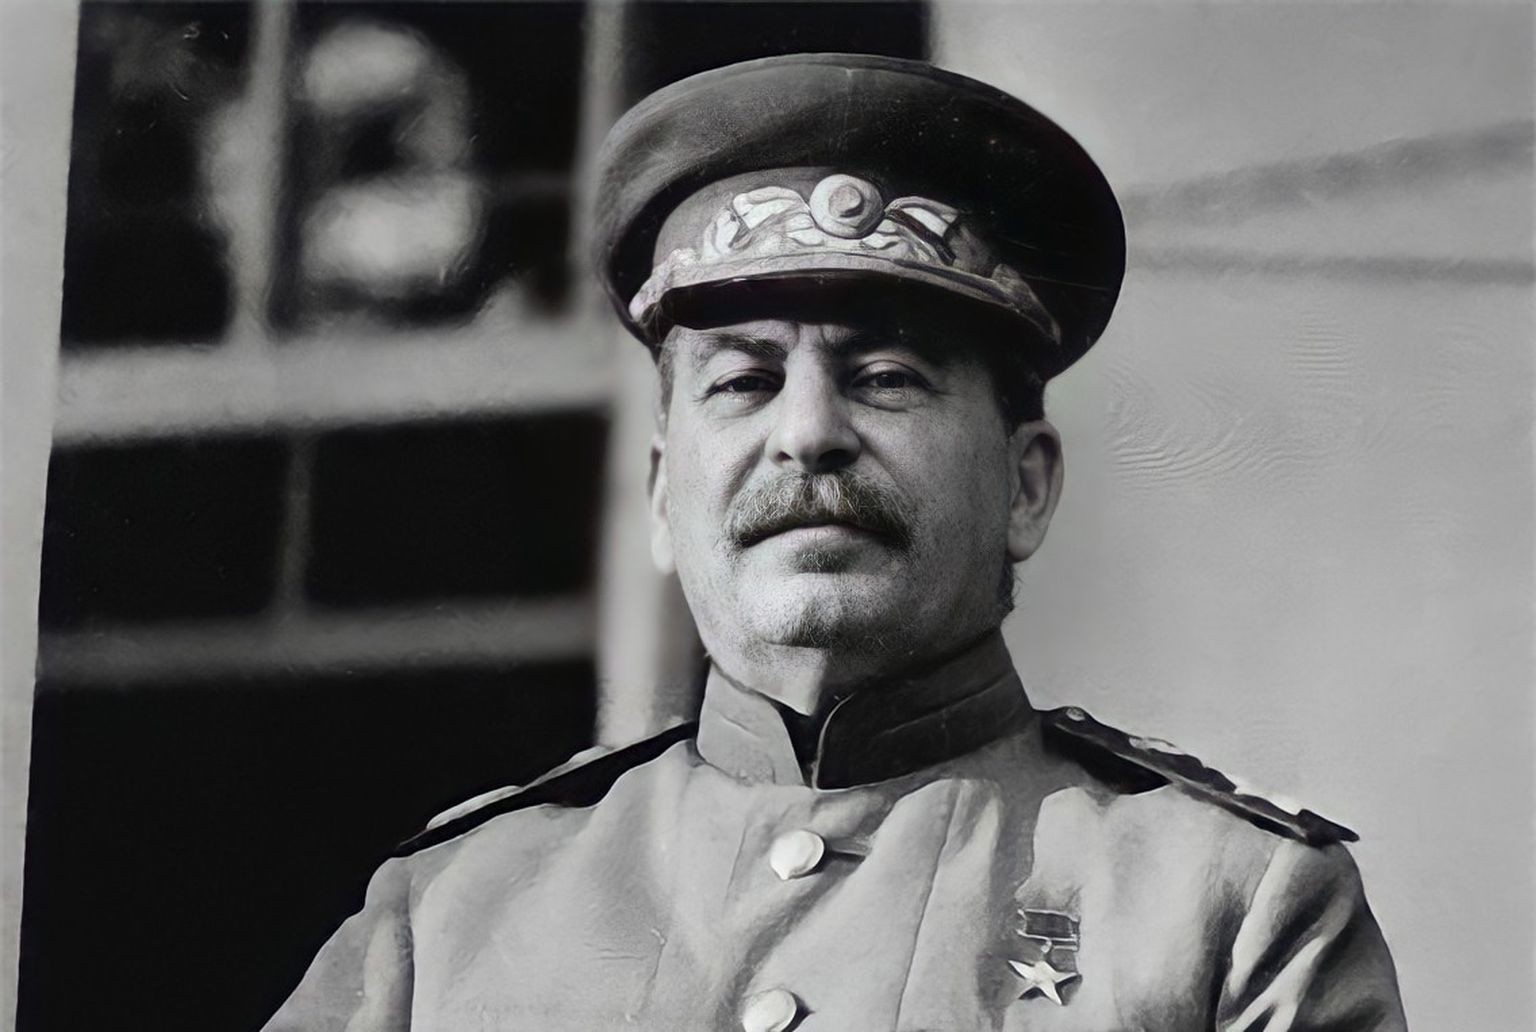 Иосиф Сталин во время Тегеранской конференции, ноябрь-декабрь 1943 года. Сталин - фактический глава советского государства в 1922-1953 годах. Только в годы «Большого террора» 1937-1938 годов под руководством и с согласия Сталина были арестованы полтора миллиона человек, из них около 700 тысяч приговорены к расстрелу.